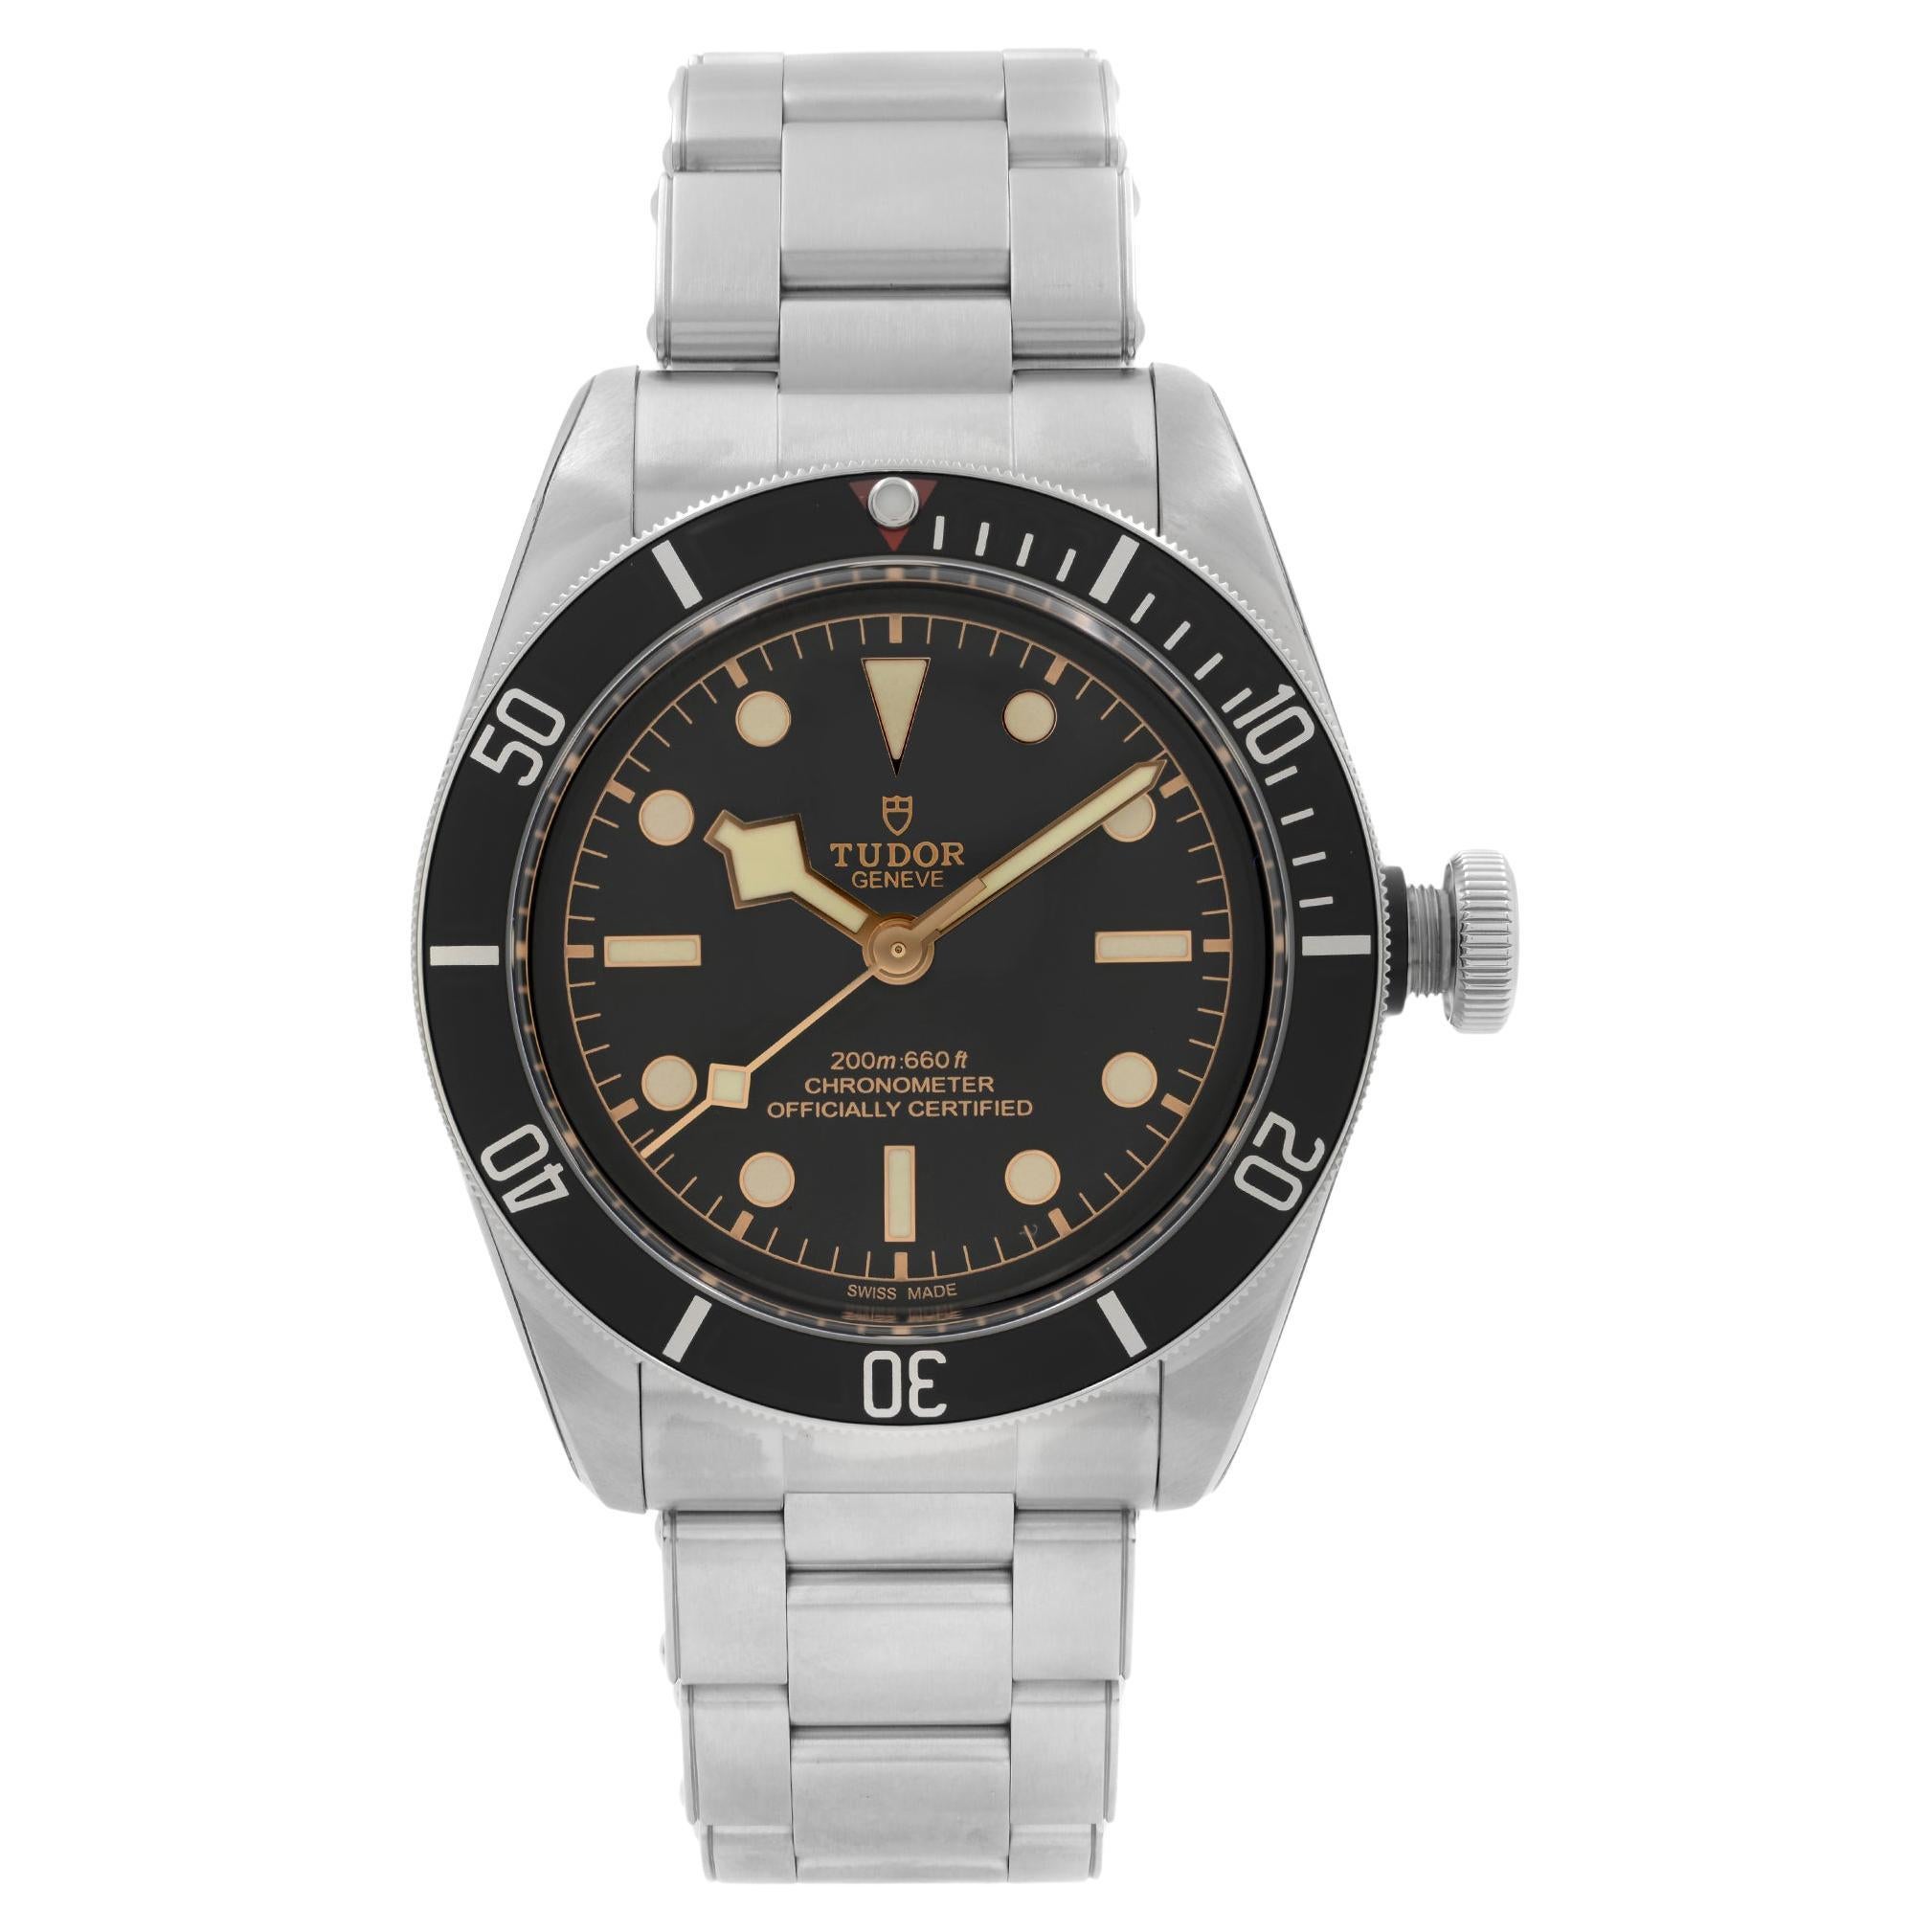 Tudor Heritage Black Bay Steel Black Dial Automatic Men's Watch 79230N